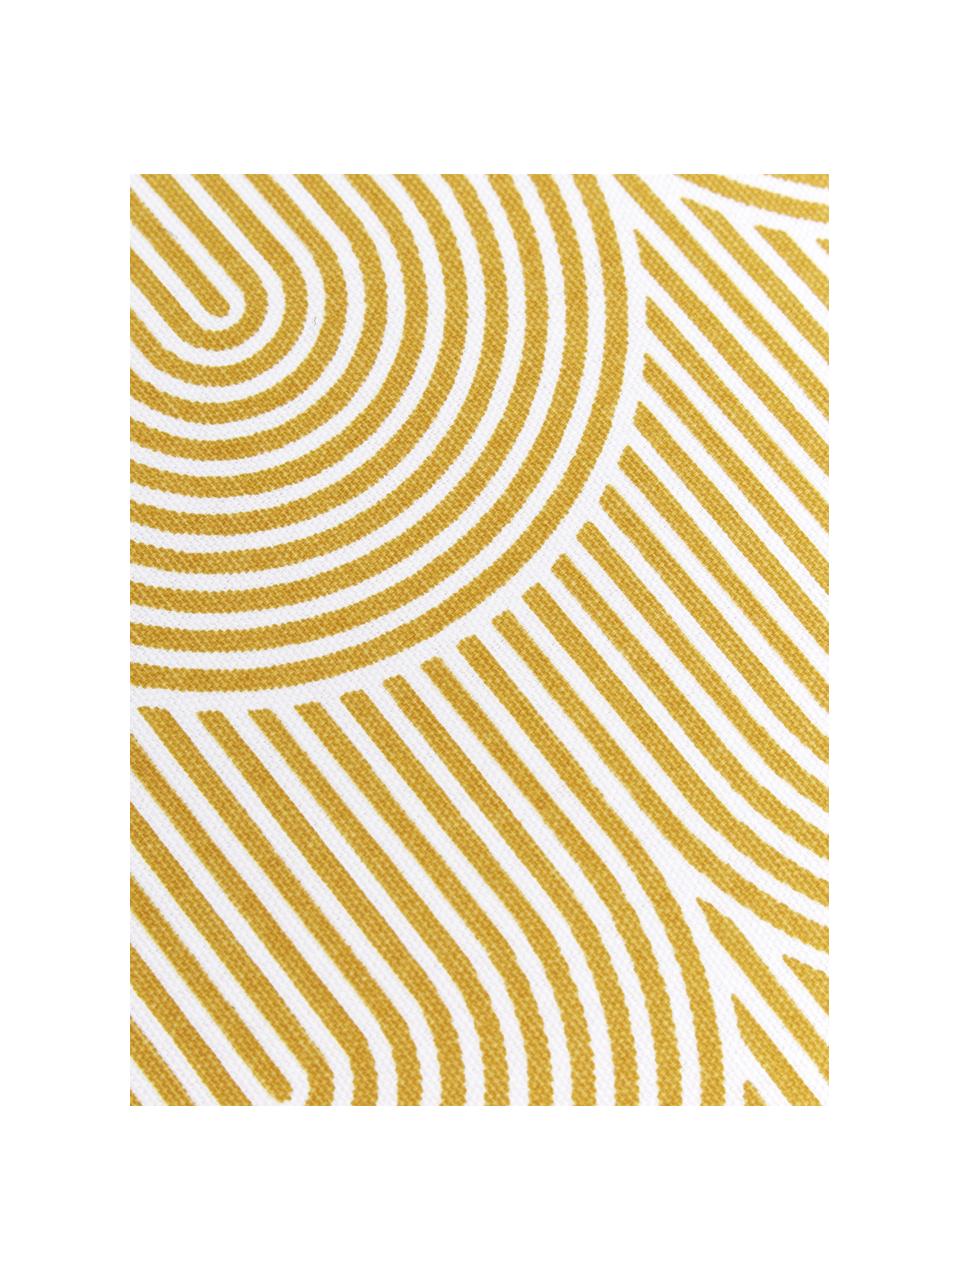 Hohes Sitzkissen Arc in Gelb/Weiß, Bezug: 100% Baumwolle, Gelb, 40 x 40 cm